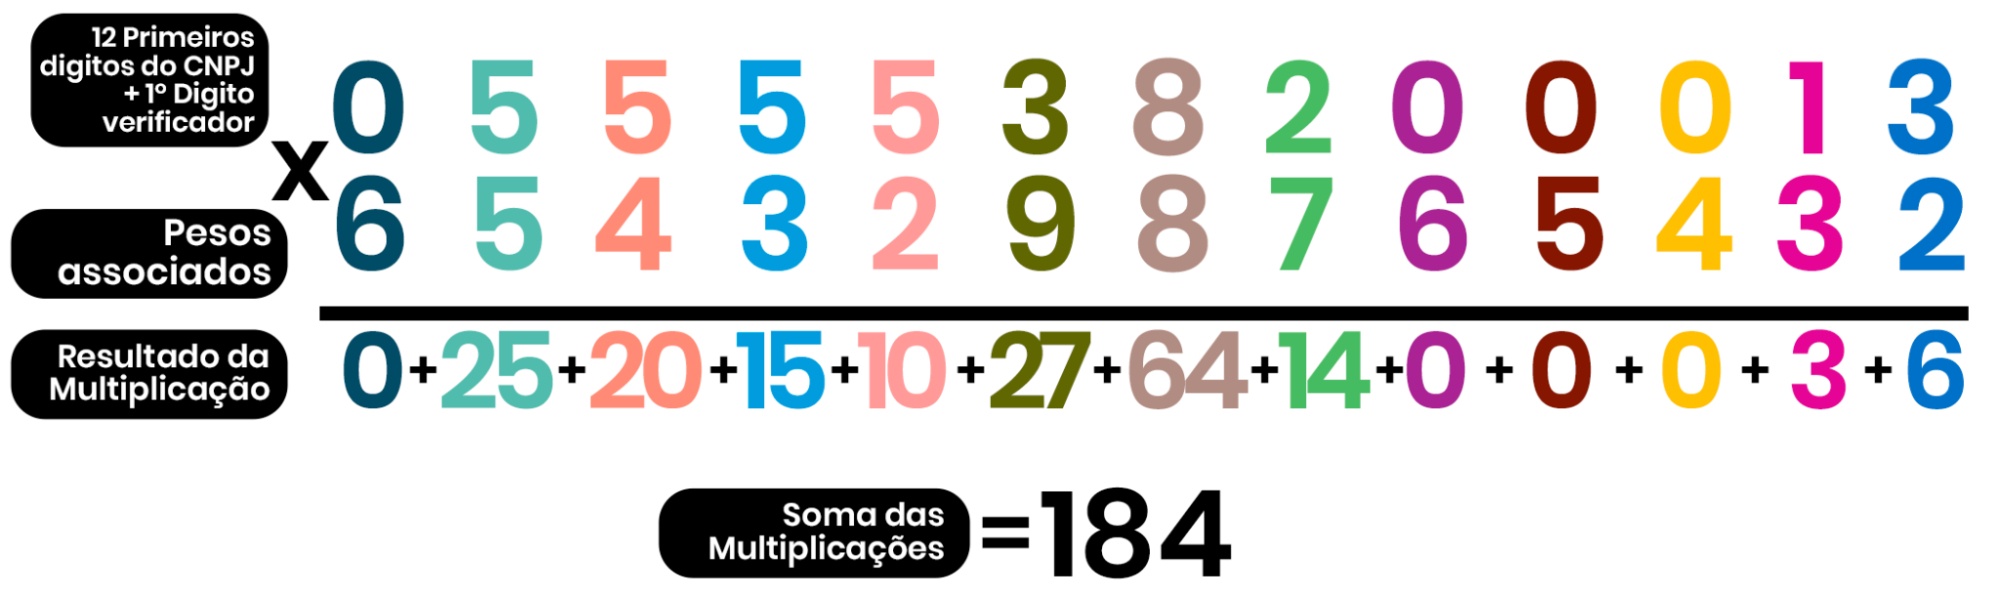 Imagem ilustra a multiplicação dos 13 primeiros dígitos do CNPJ (0555538200013) e seus respectivos pesos (6,5,4,3,2,9,8,7,6,5,4,3,2), além disso, mostra os resultados de cada multiplicação (0,25,20,15,10,27,64,14,0,0,0,3,6), sendo que os resultados das multiplicações foram somados para obter o número 184.